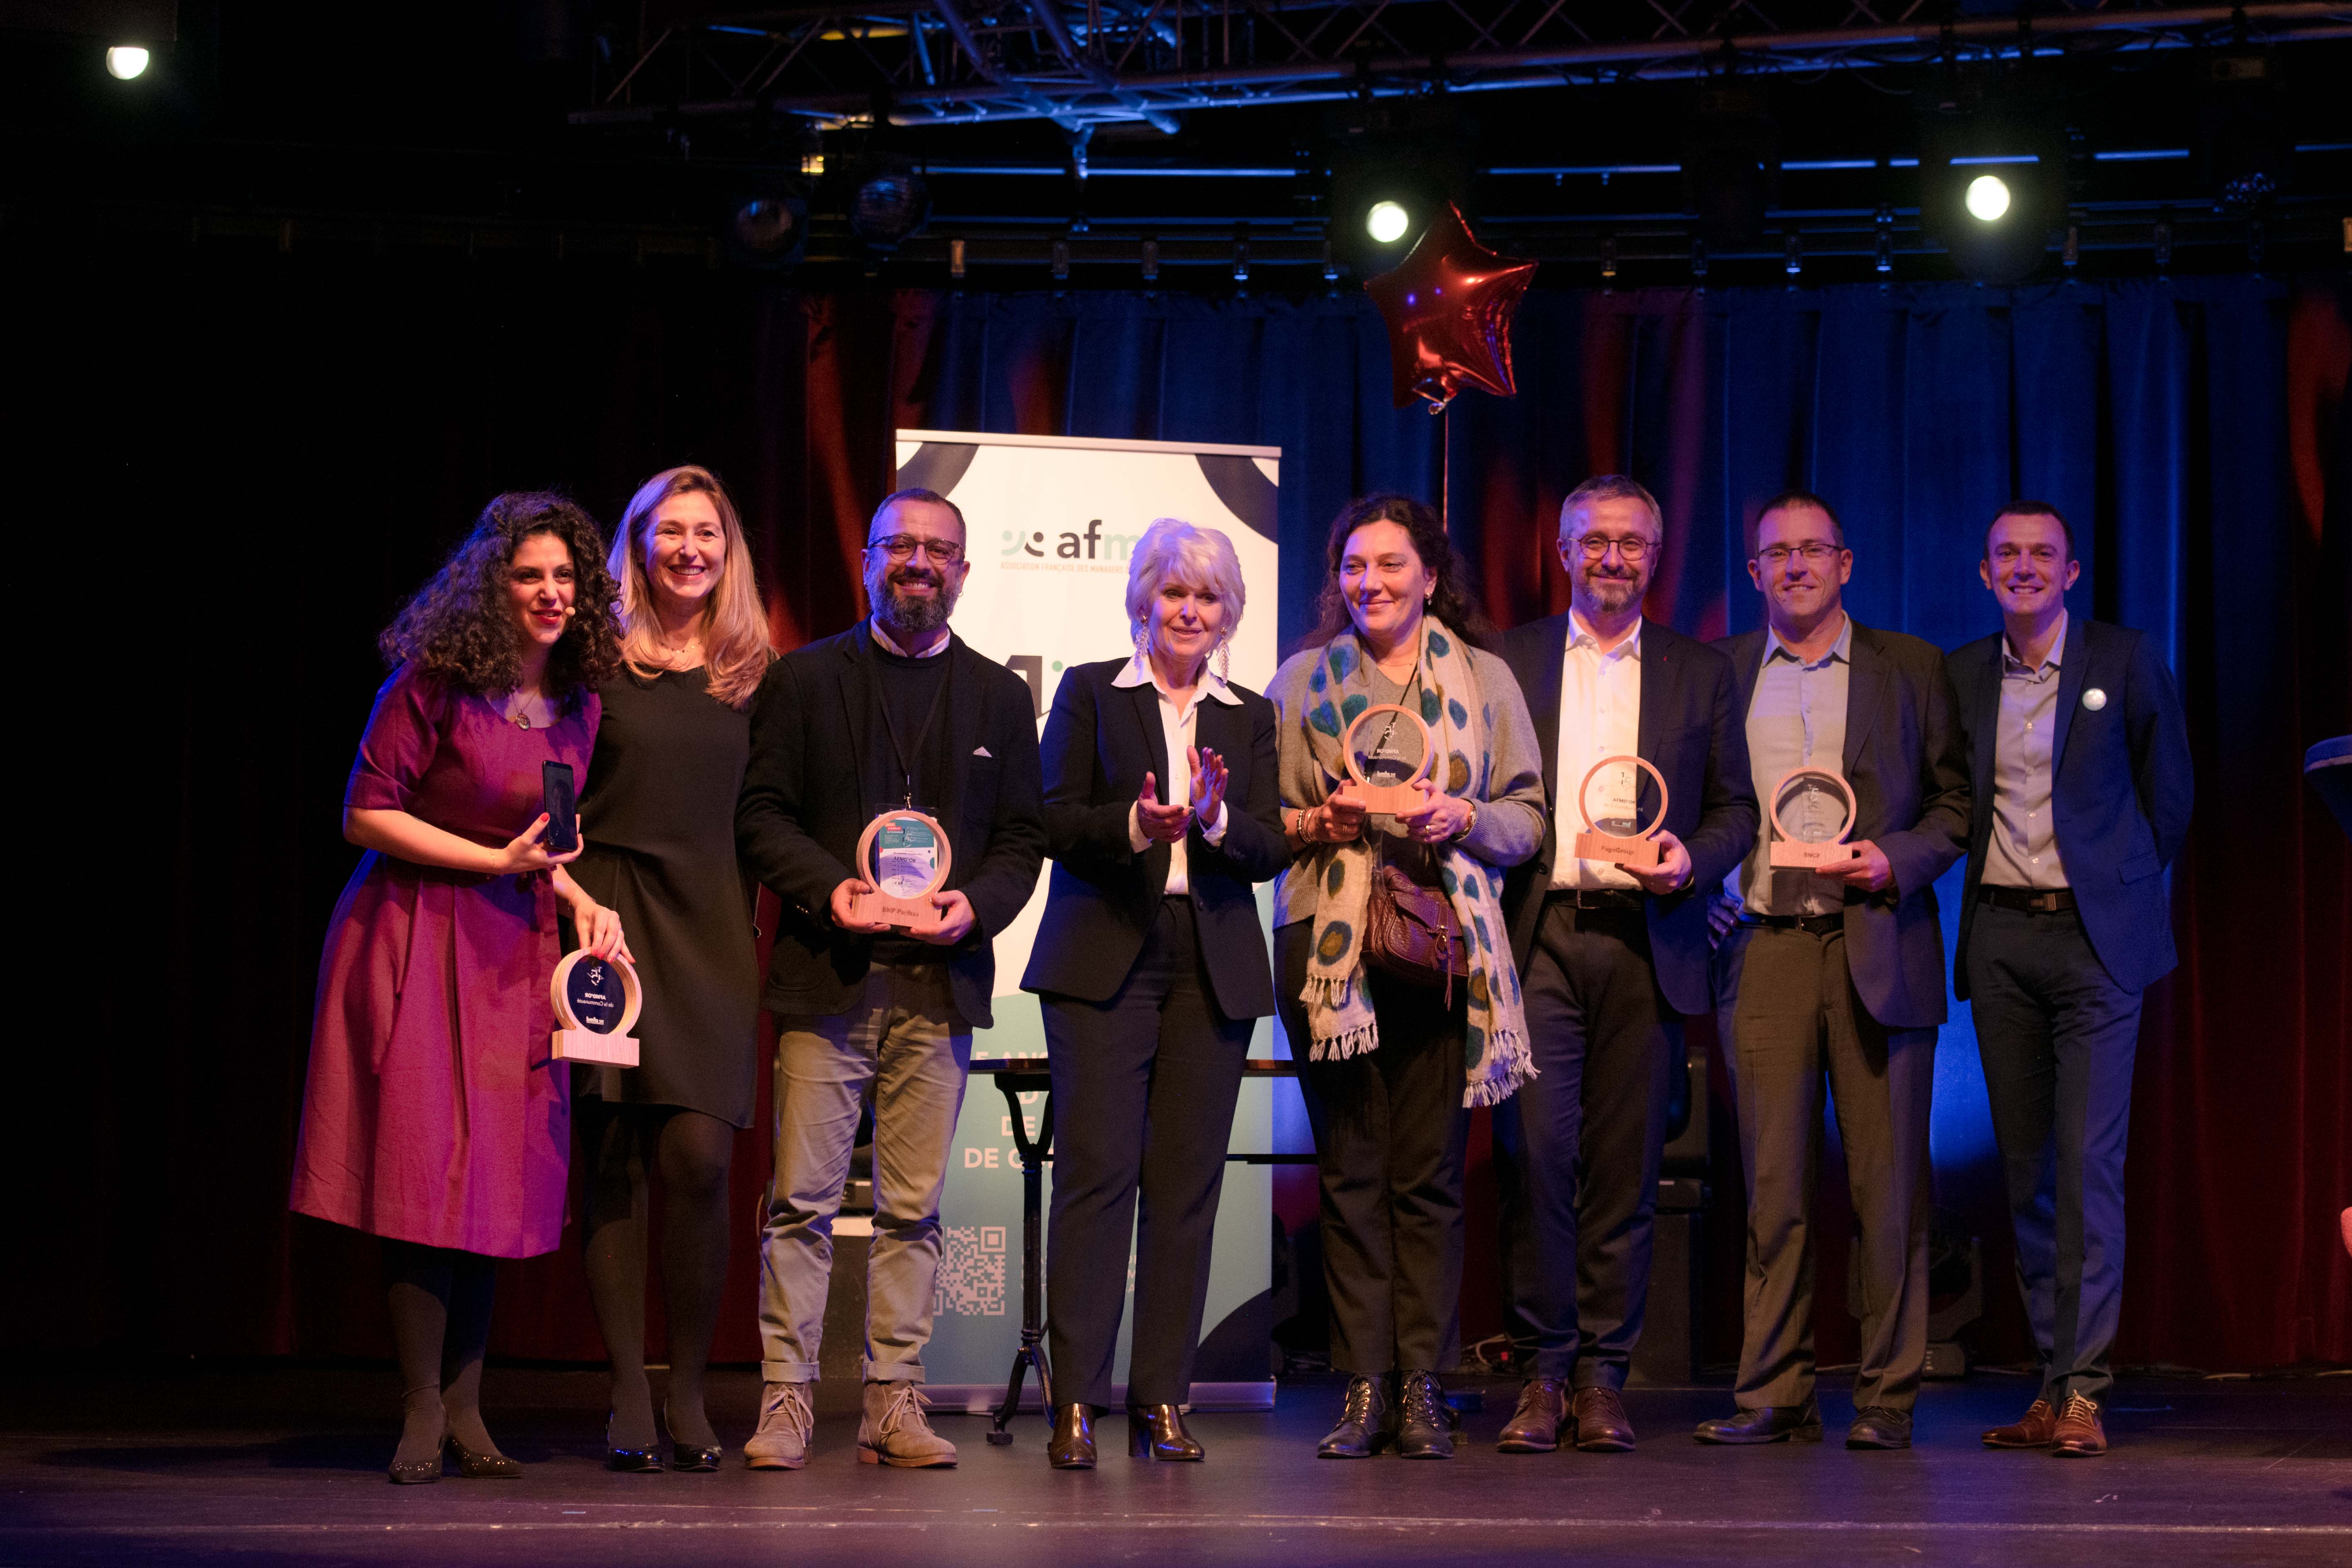 Des adhérents reçoivent leurs trophées AFMD'or lors de la cérémonie de remise de prix